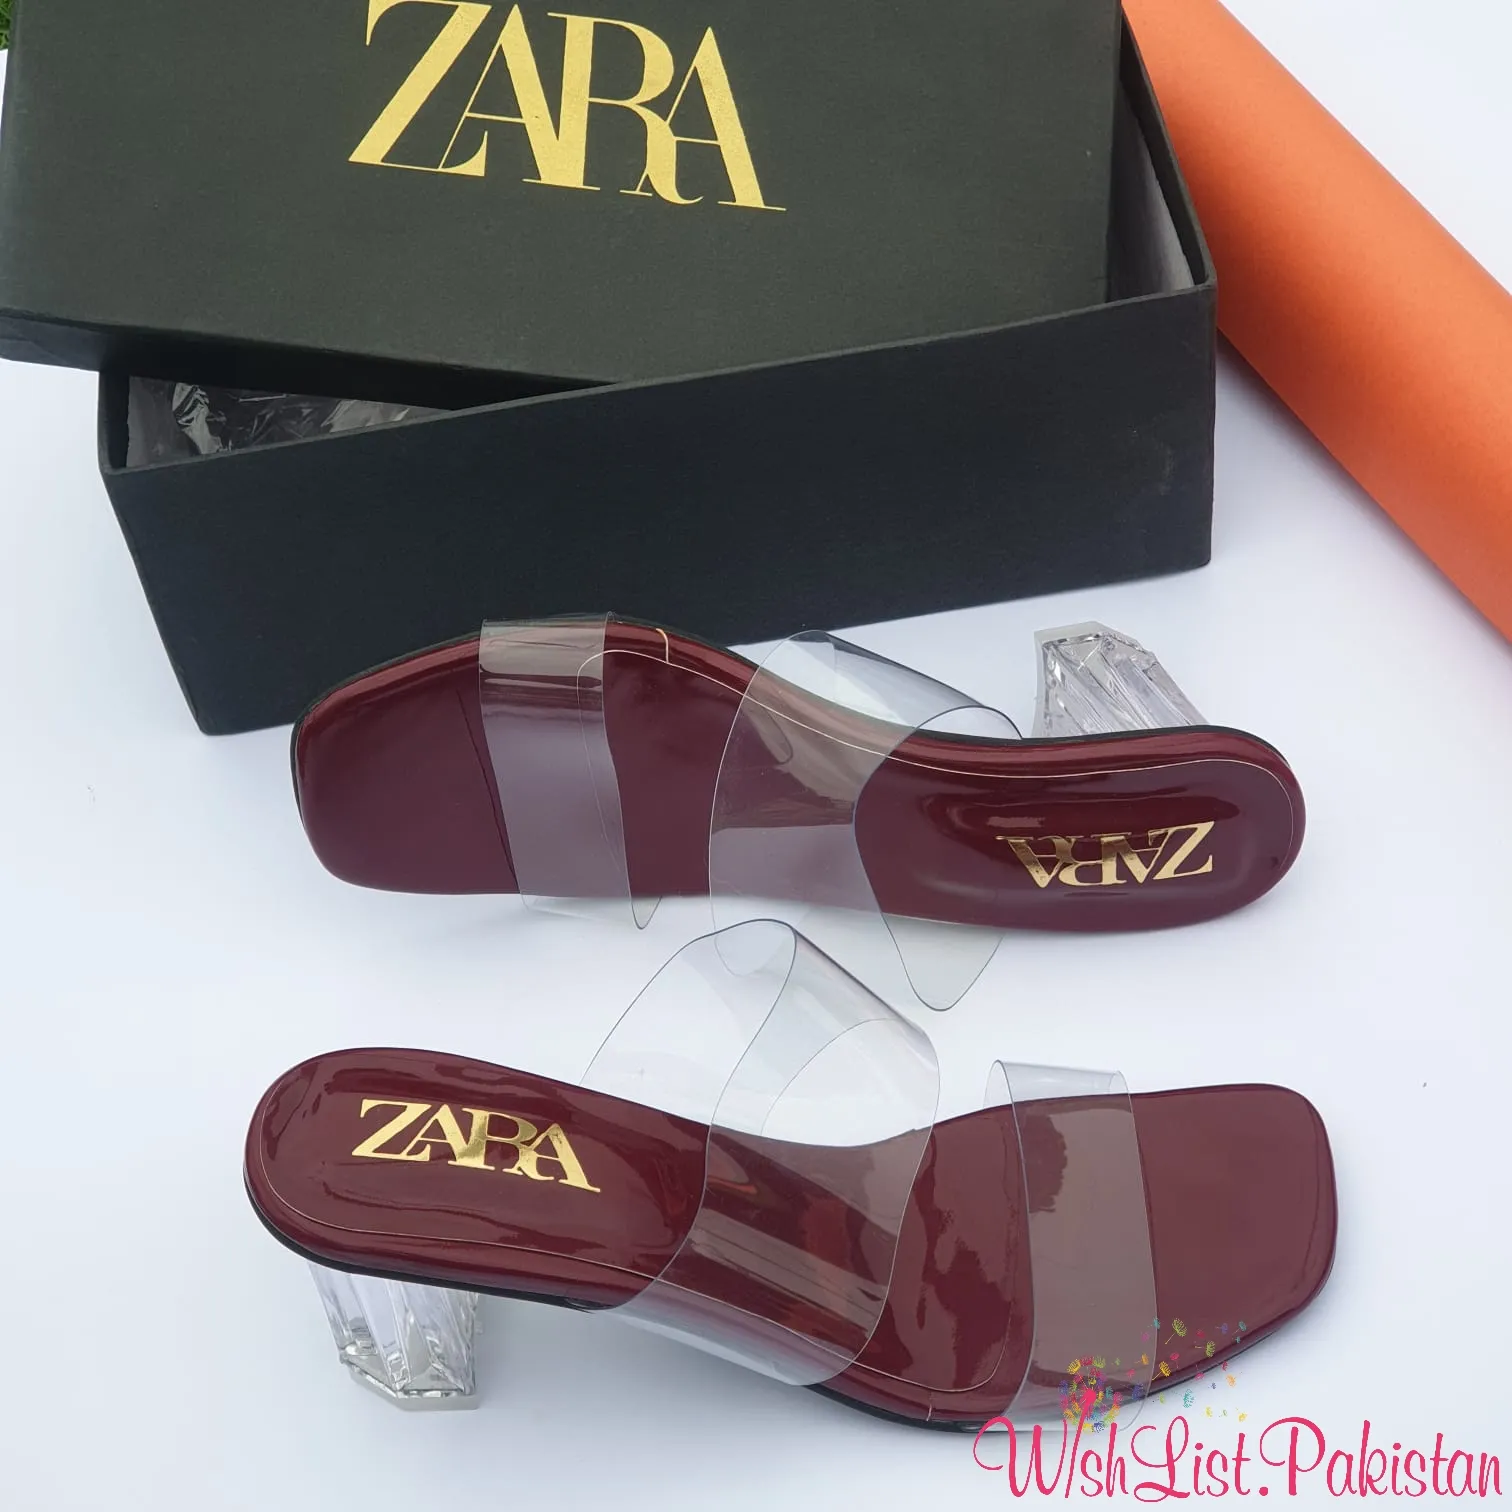 Zara Clear Wedge